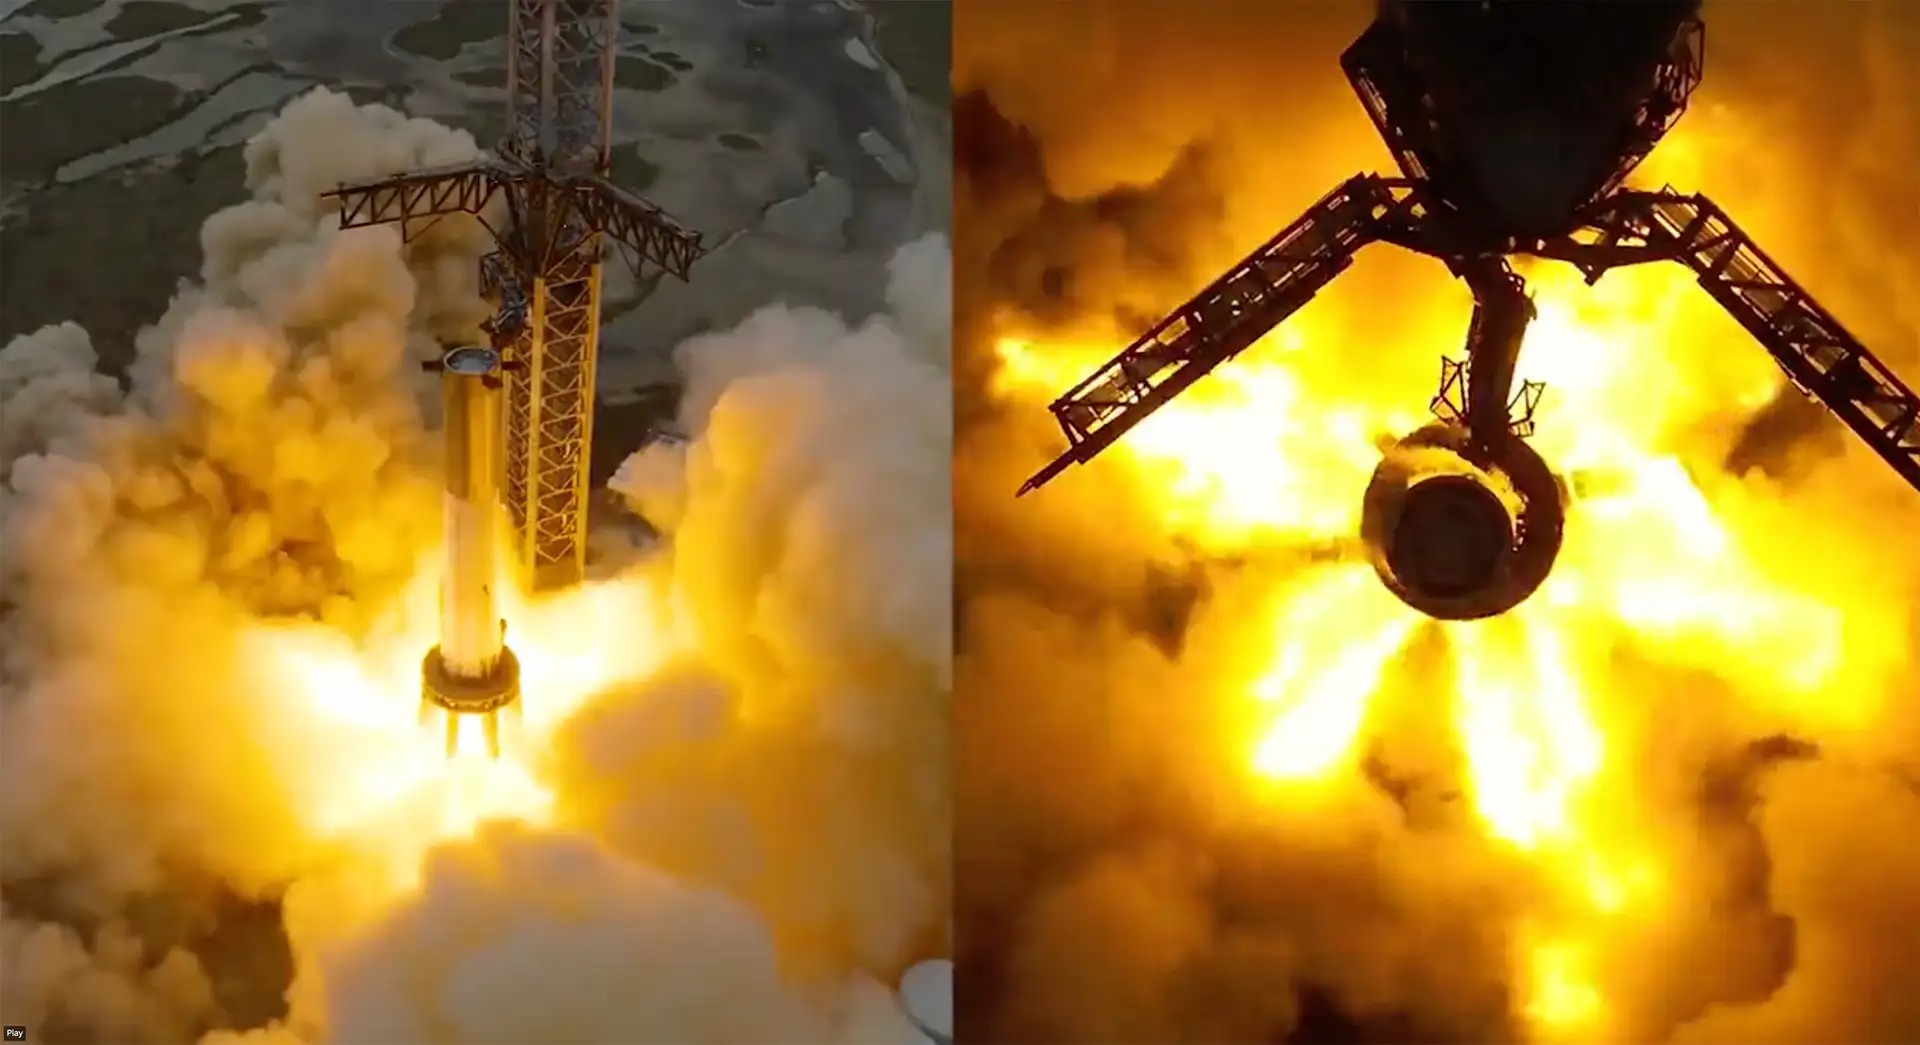 starship 33raptors spacex 2 - Die 33 Triebwerke des Starship von SpaceX haben gezündet: Wie lief dieser wichtige Test ab?